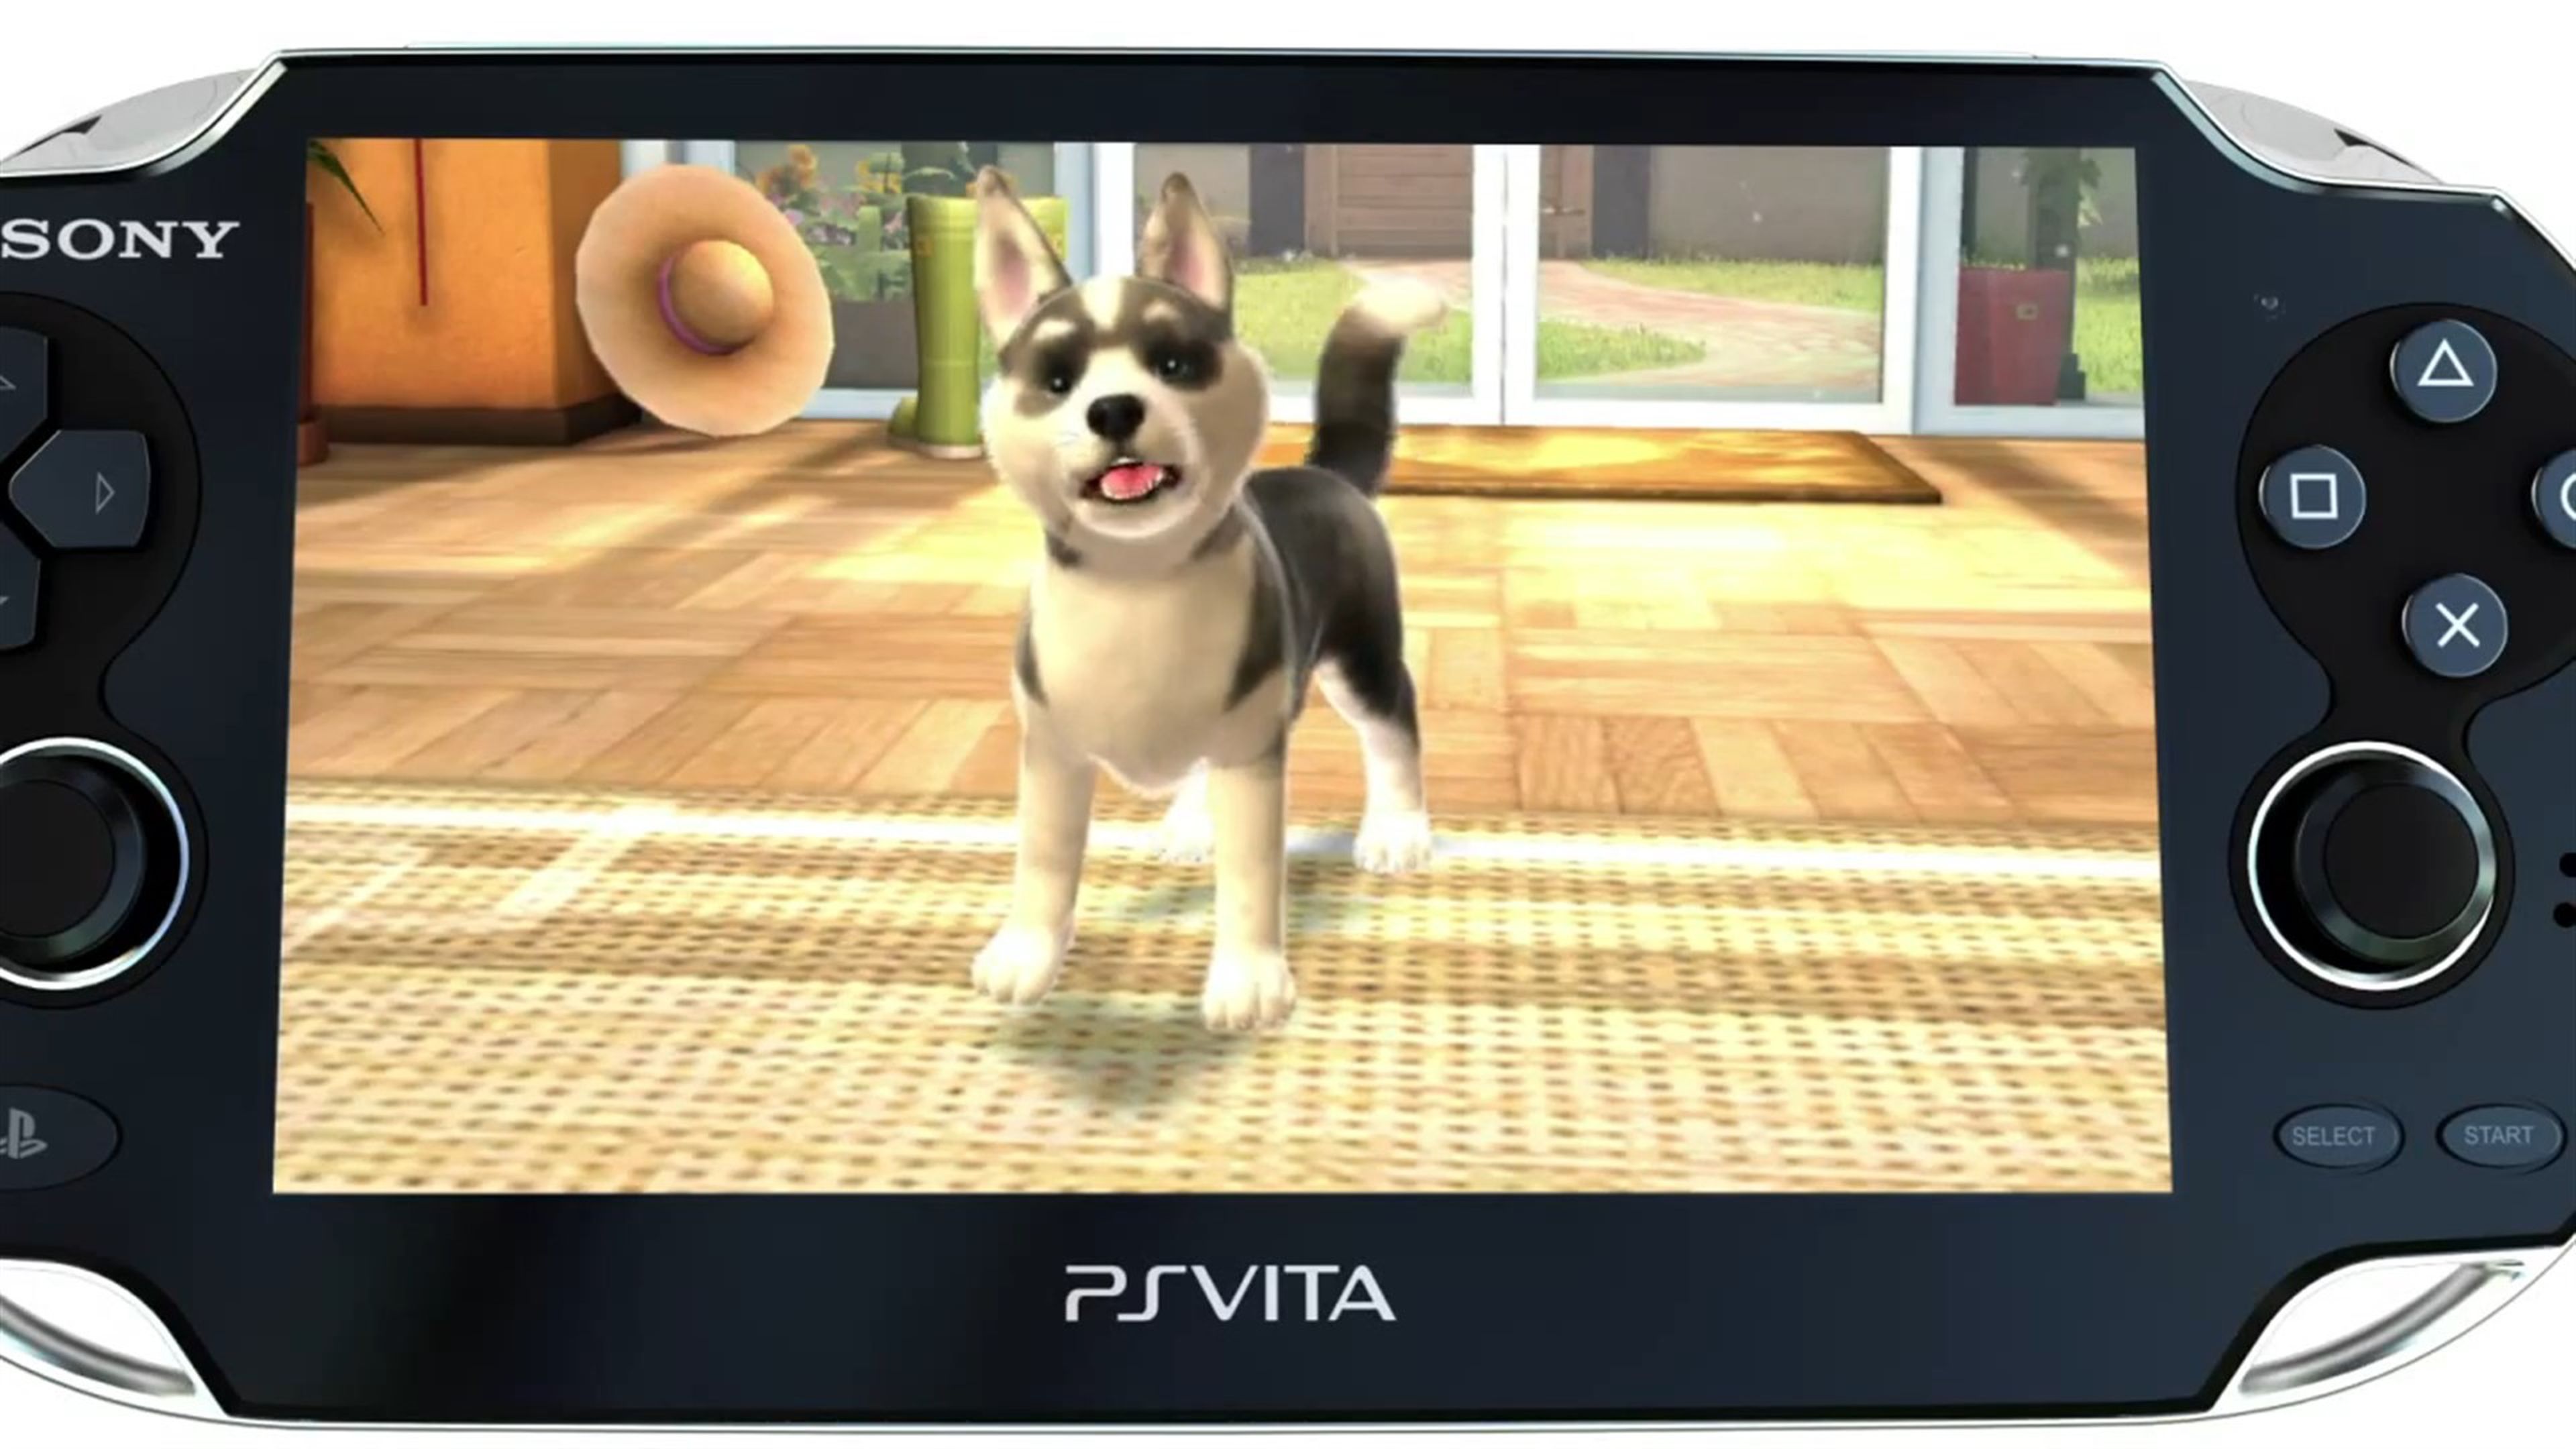 PlayStation Vita Pets